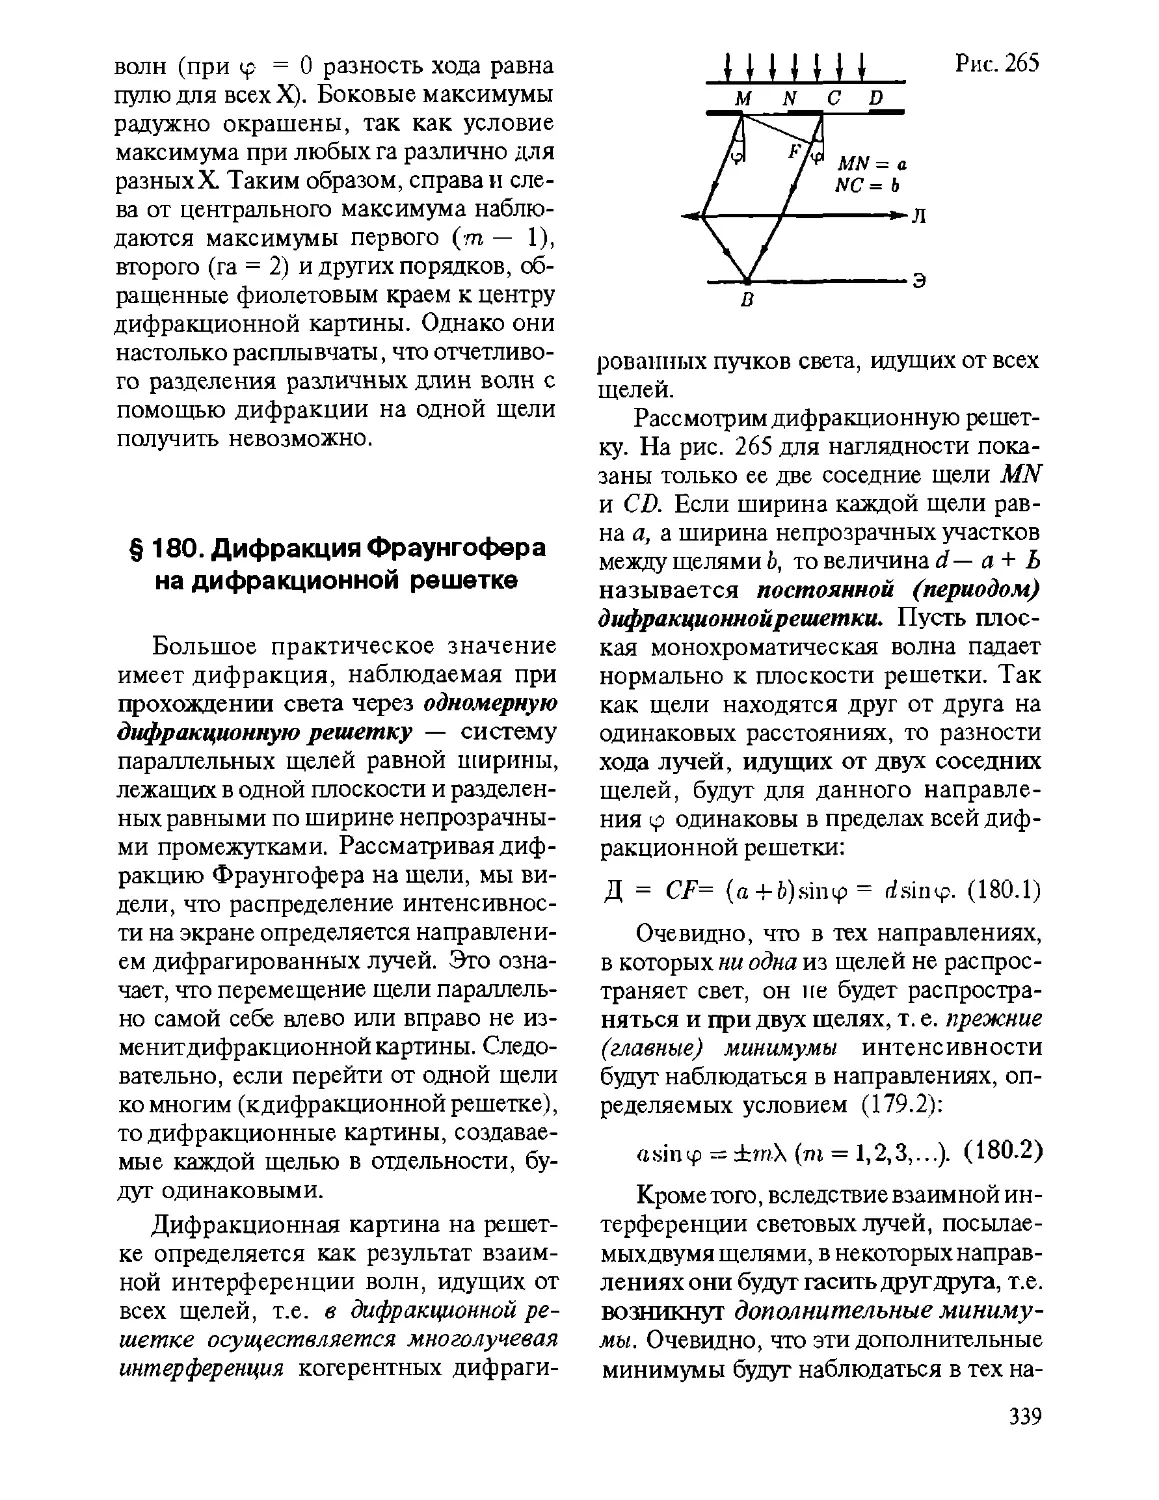 § 180. Дифракция Фраунгофера на дифракционной решетке